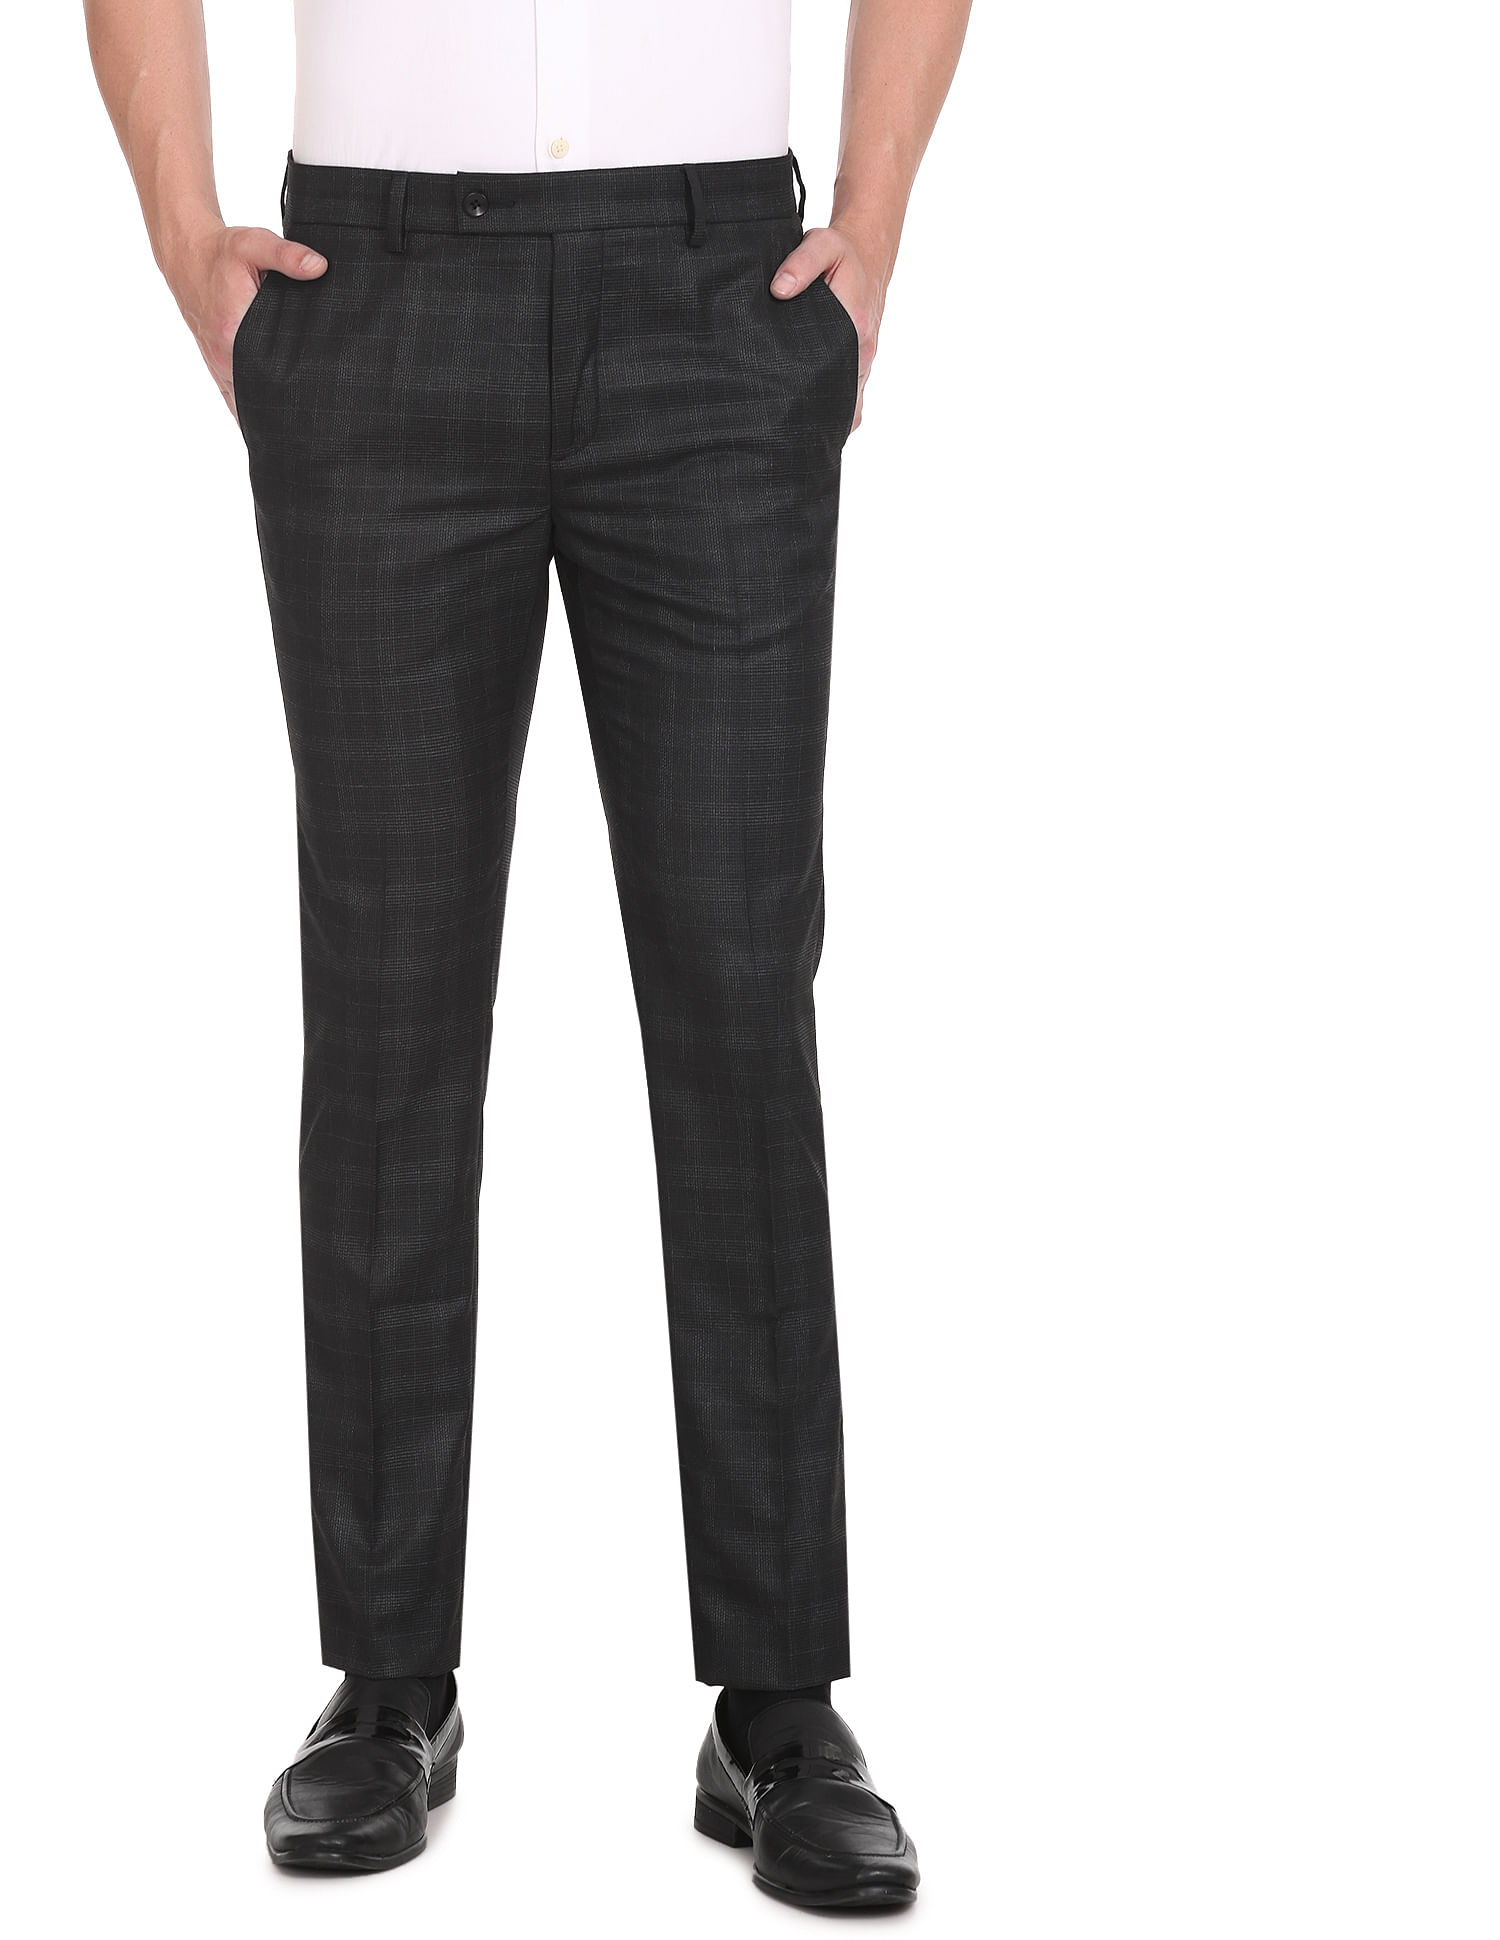 Buy Arrow Men's Regular Pants (ARADOTR2470_Medium Khaki_30) at Amazon.in